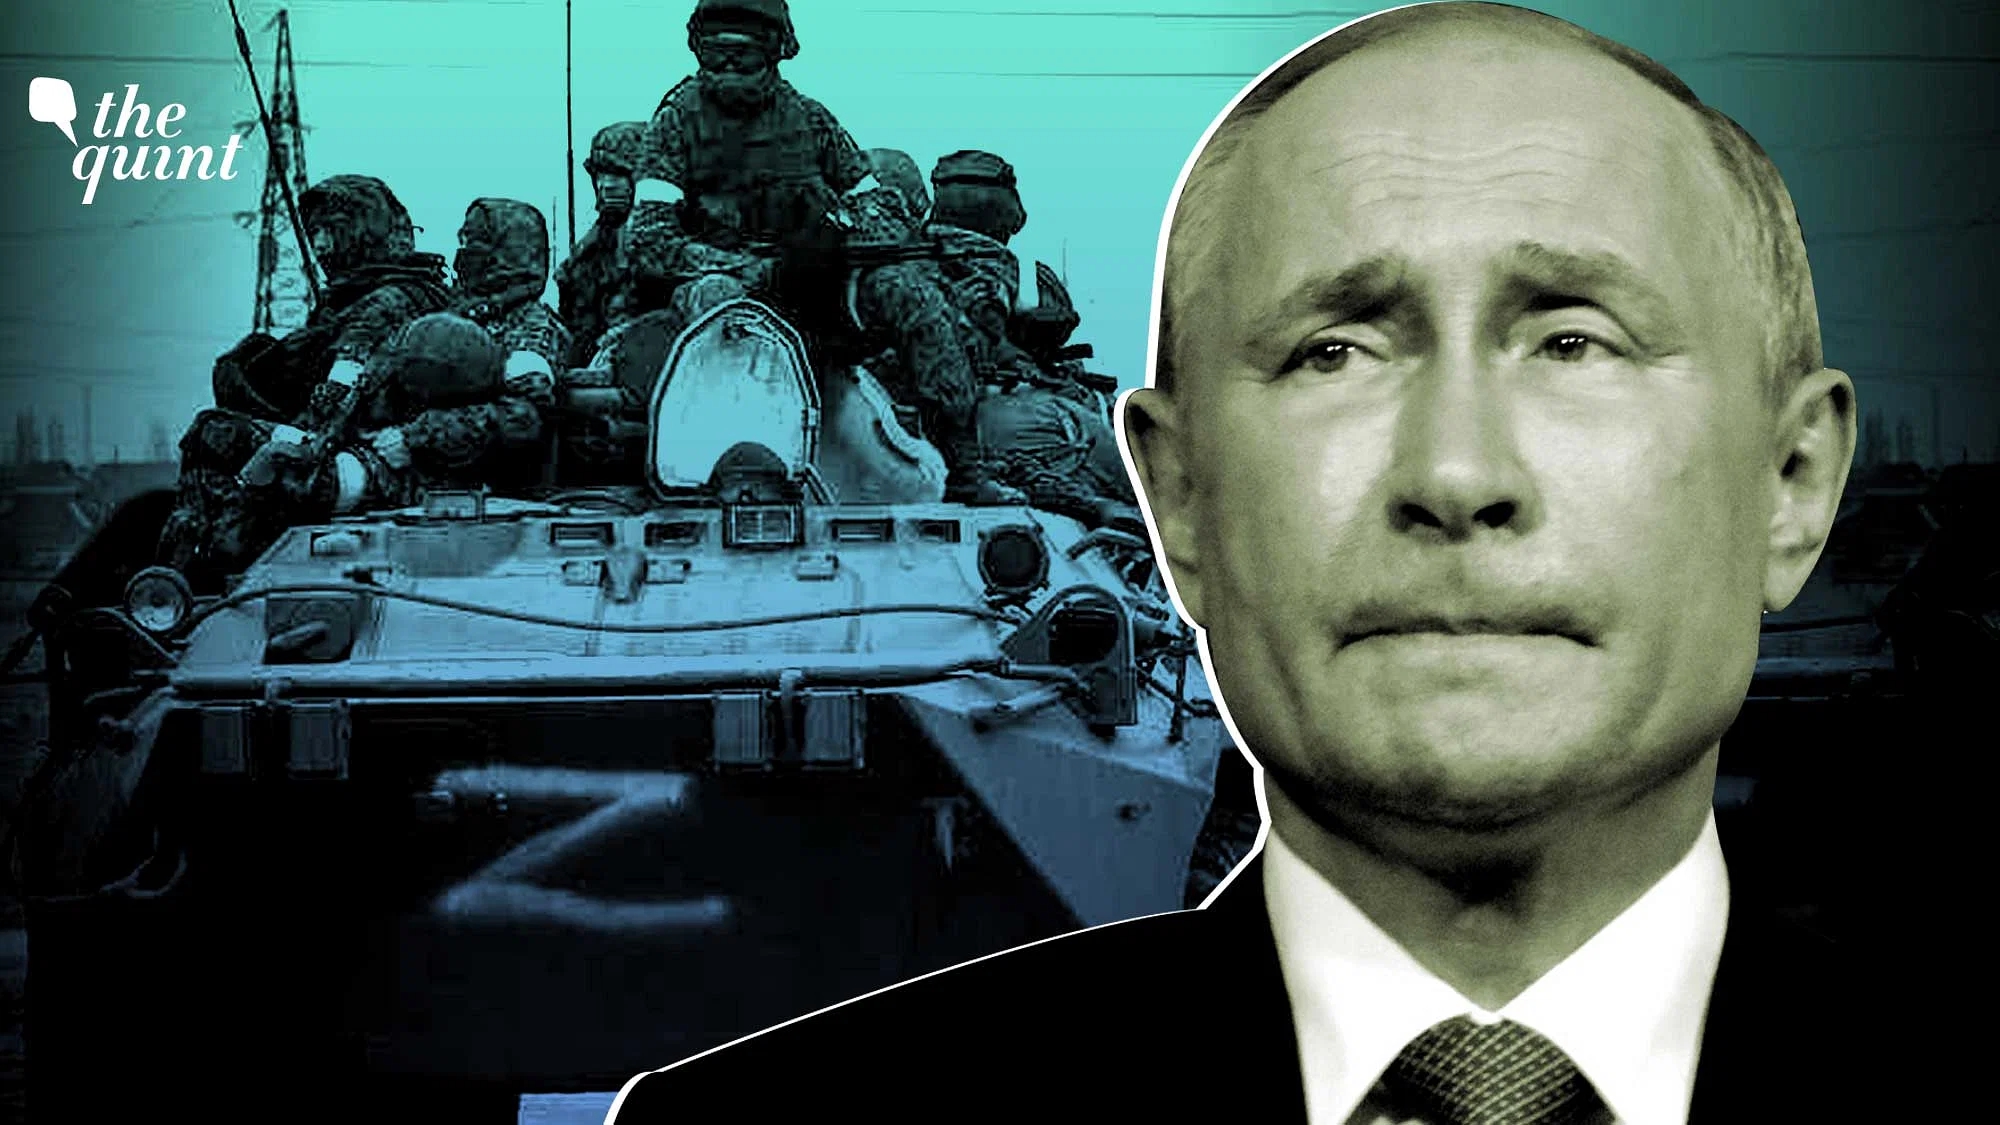 Putin chỉ trích các lệnh trừng phạt quốc tế một ngày sau khi có báo cáo nội bộ mật đầy u ám được chuẩn bị cho chính phủ Nga